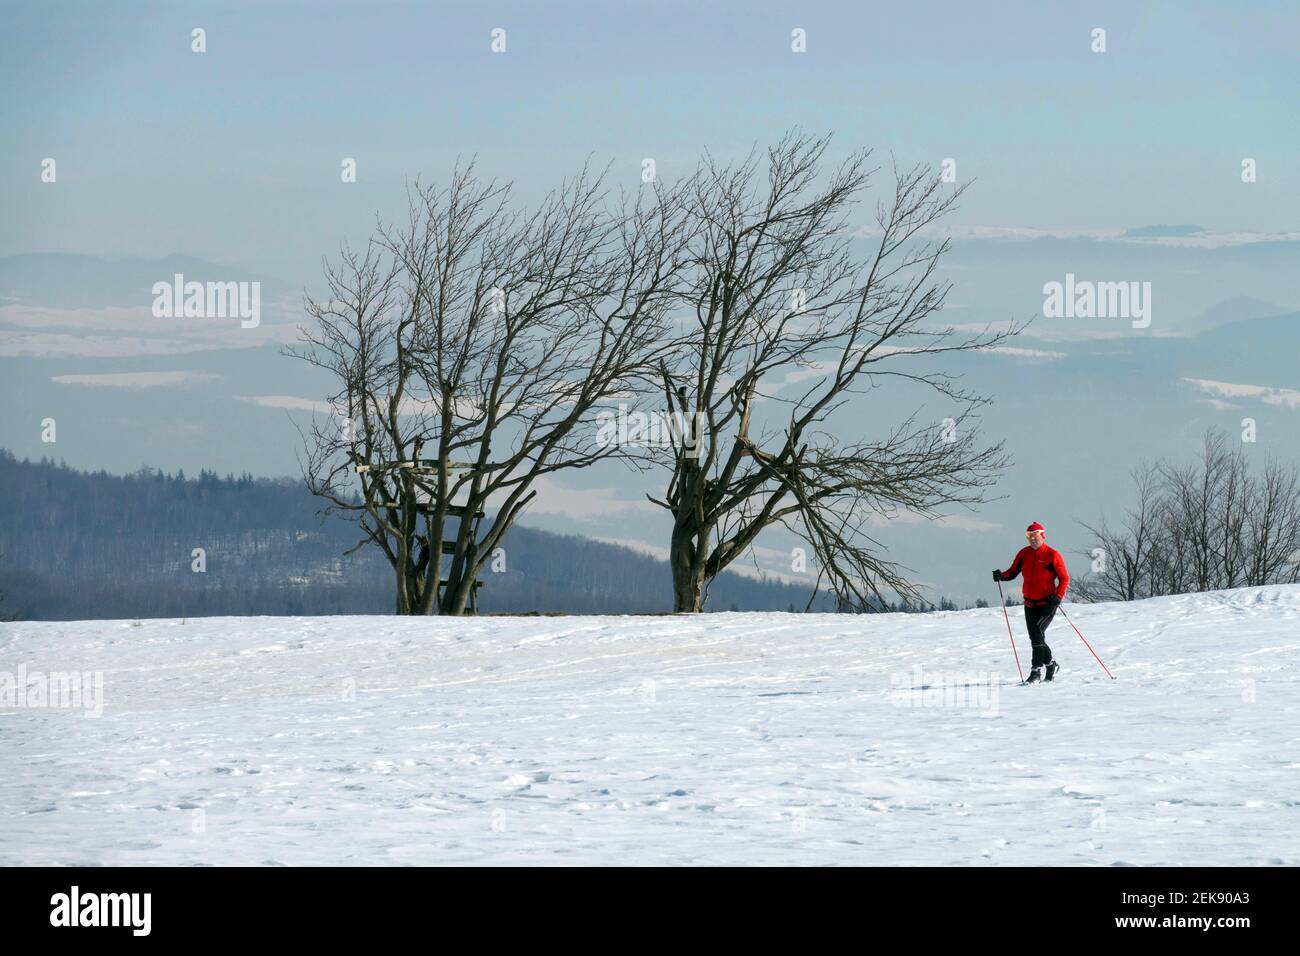 Scène de neige skieur rouge ski dans la campagne enneigée, scène d'hiver Banque D'Images